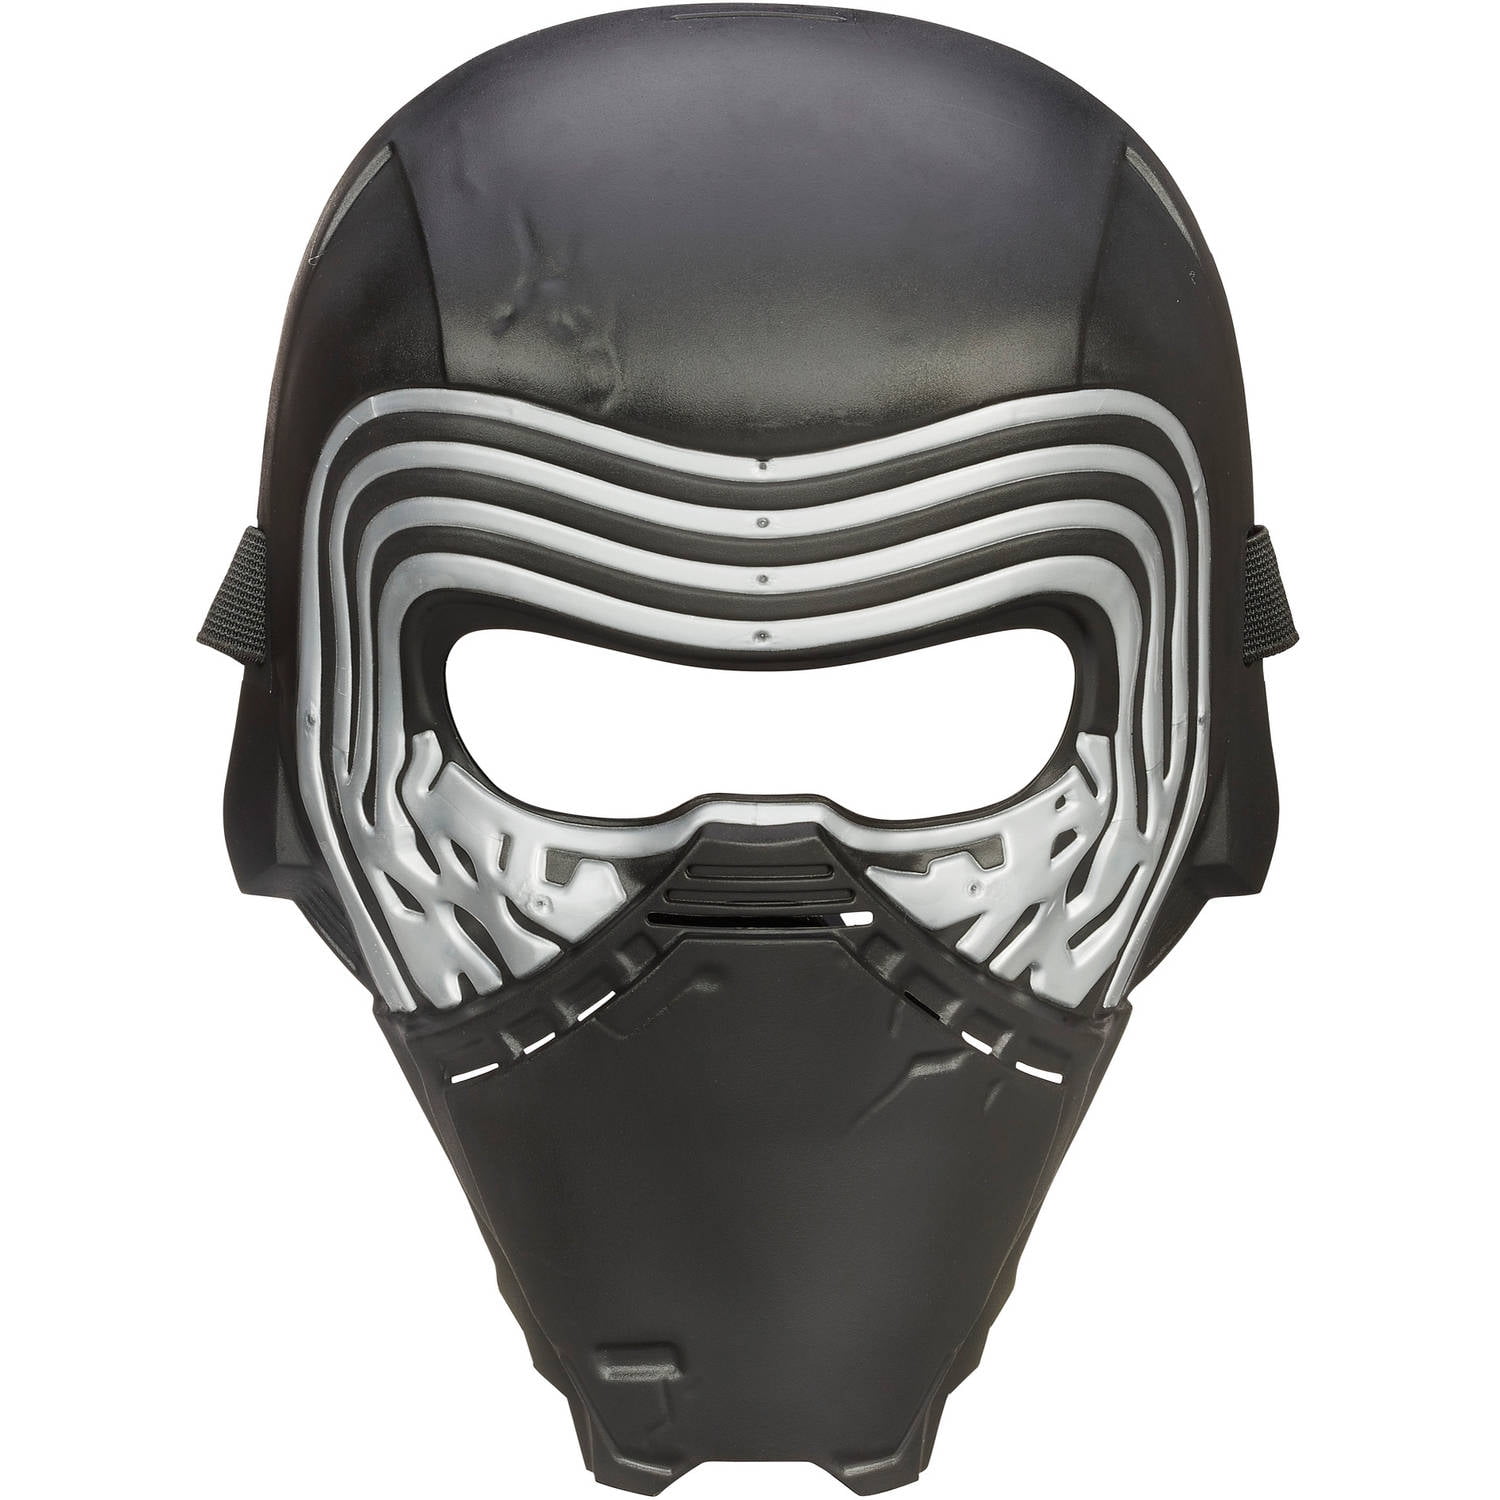 tilbage Afgørelse Autonom Star Wars theForce Awakens Kylo Ren Mask - Walmart.com